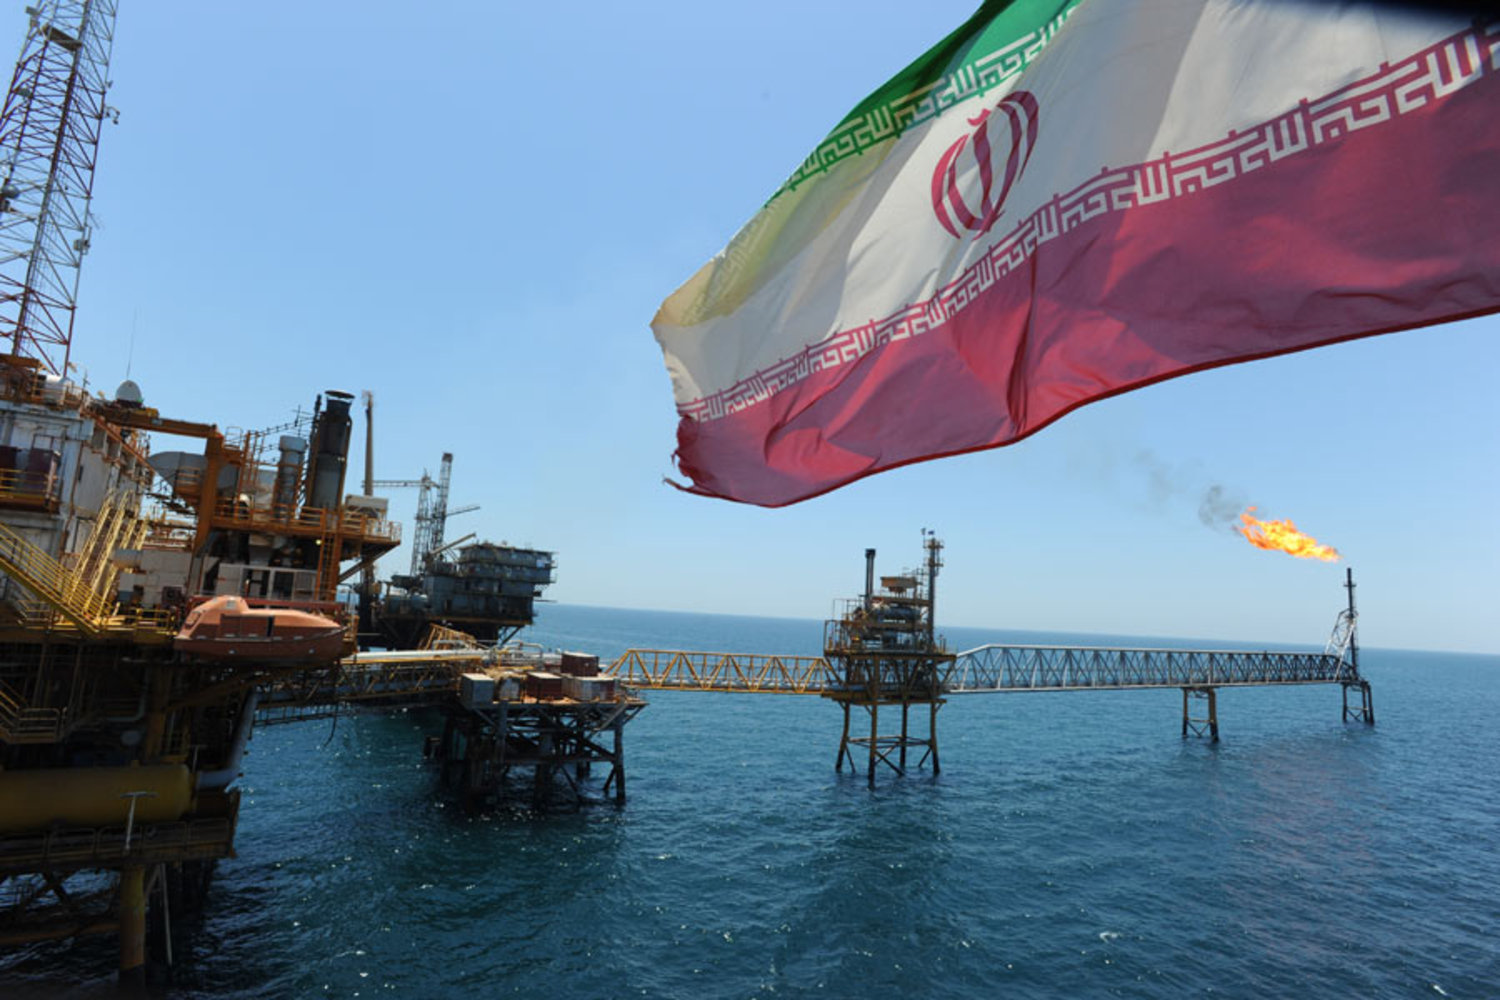 Ջահանգիրի. ԱՄՆ-ն անկարող է նվազեցնել Իրանի նավթի արտահանման ծավալը